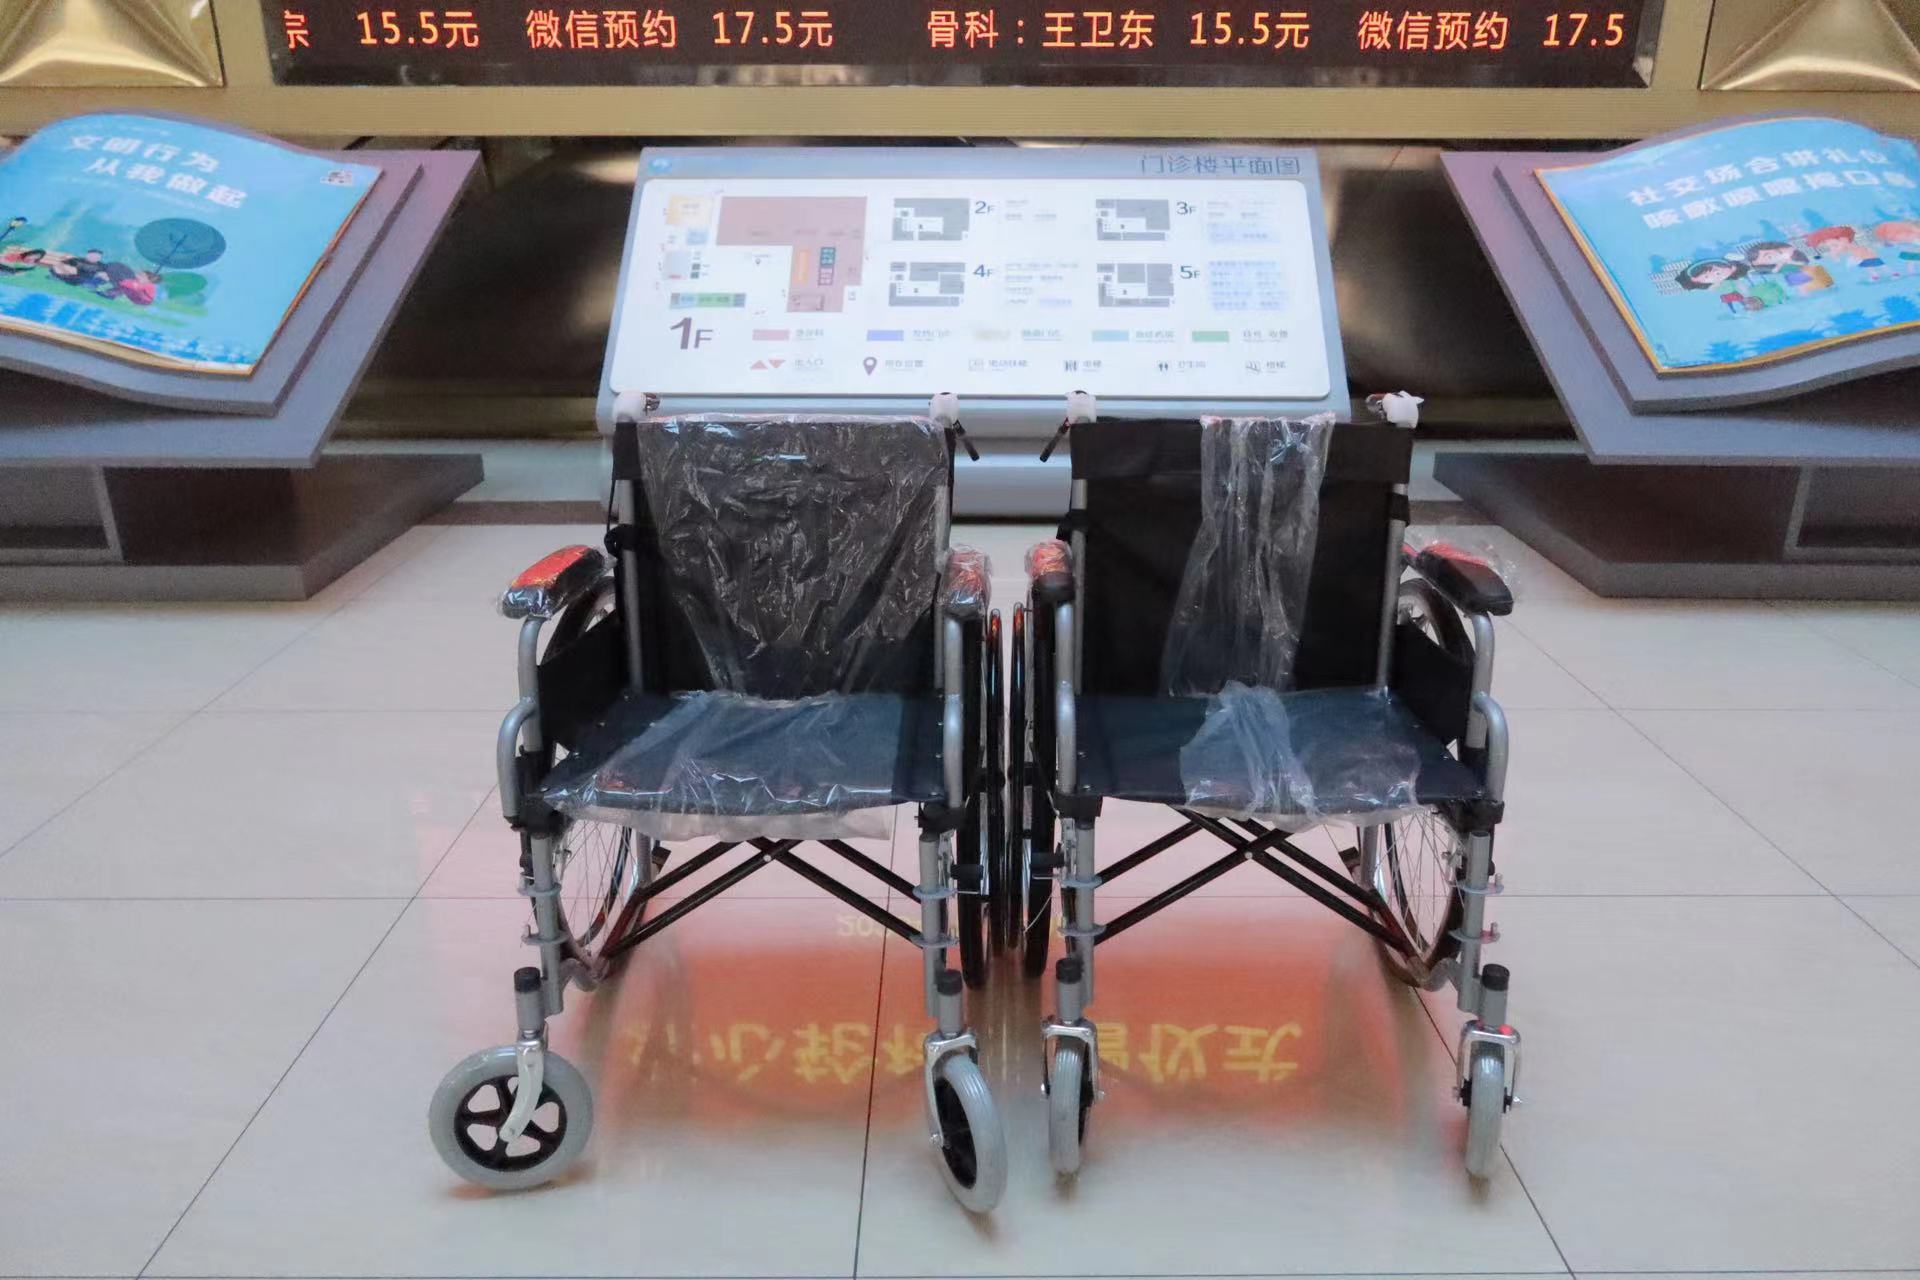 丽江市残联向市人民医院捐赠20辆爱心轮椅 (3).jpg